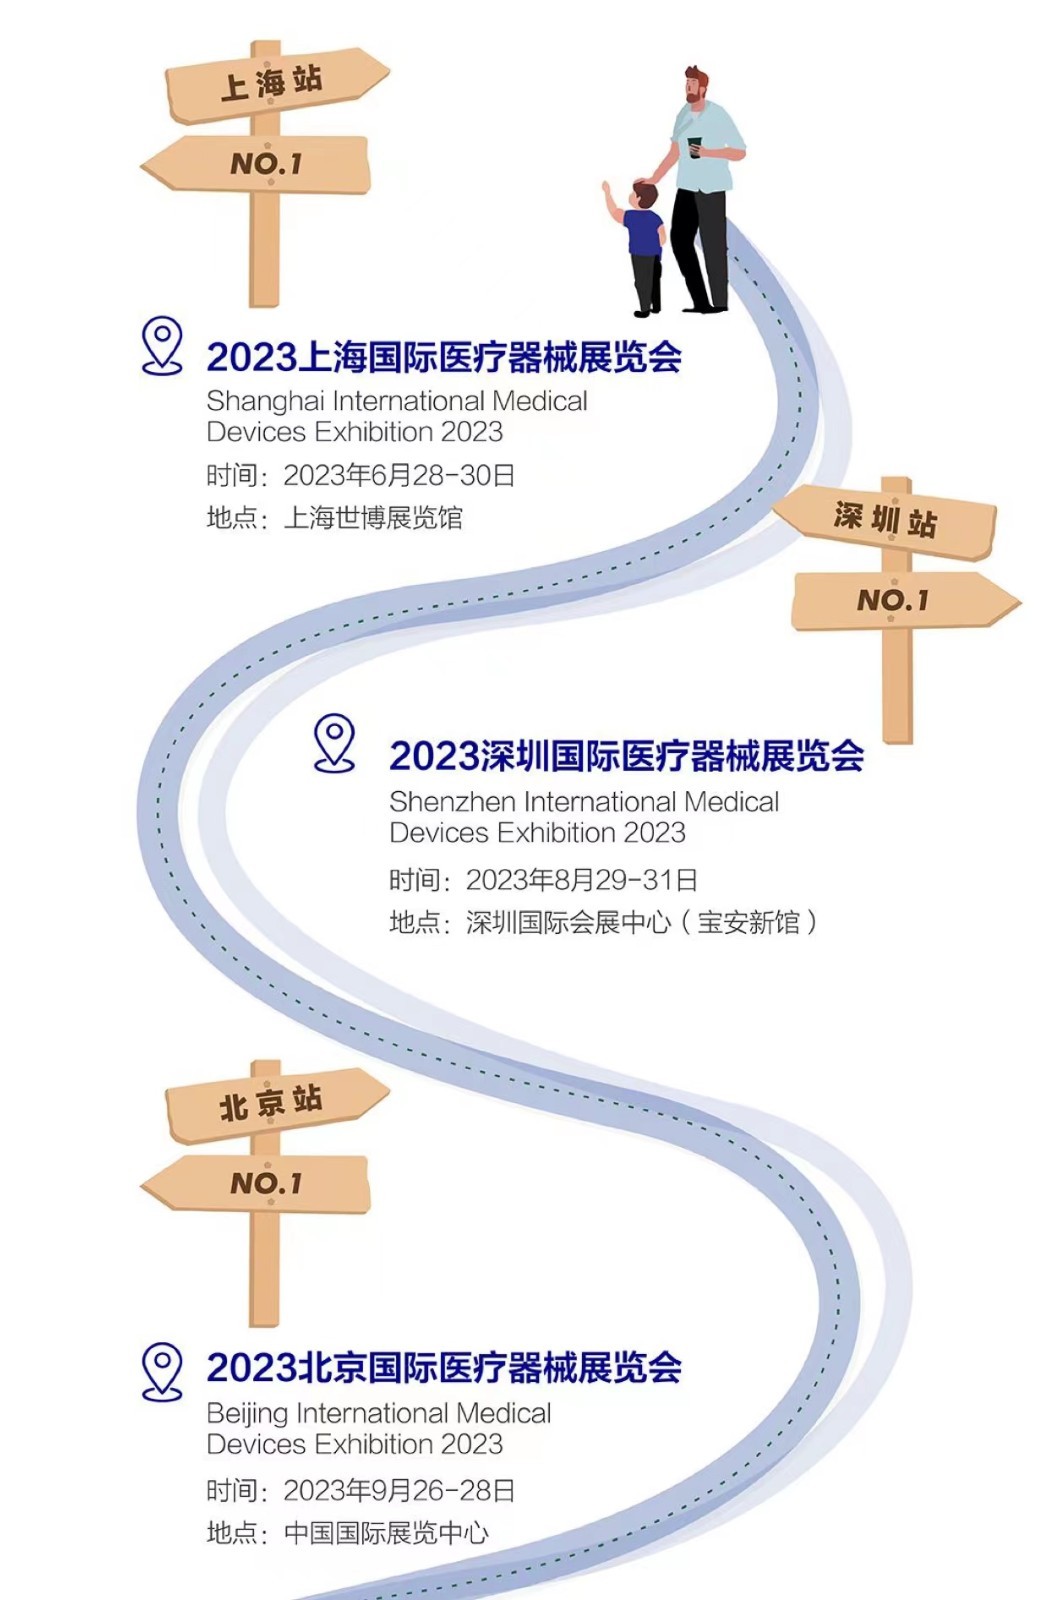 2023展会计划：6月上海医博会-8月深圳医博会-9月北京医博会